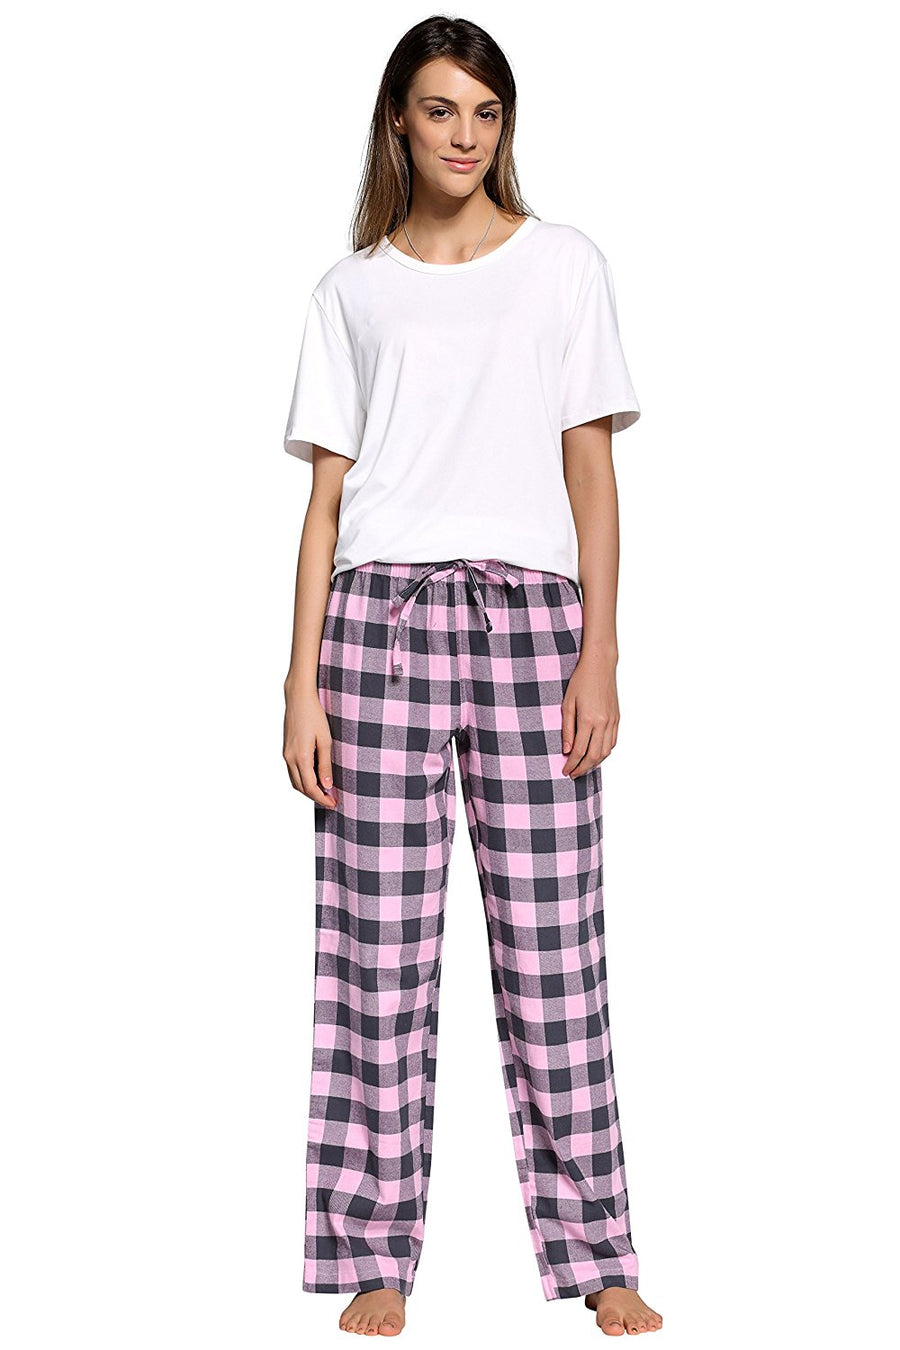 CYZ Women's 100% Cotton Super Soft Flannel Plaid Pajama/Louge Pants – CYZ  Collection